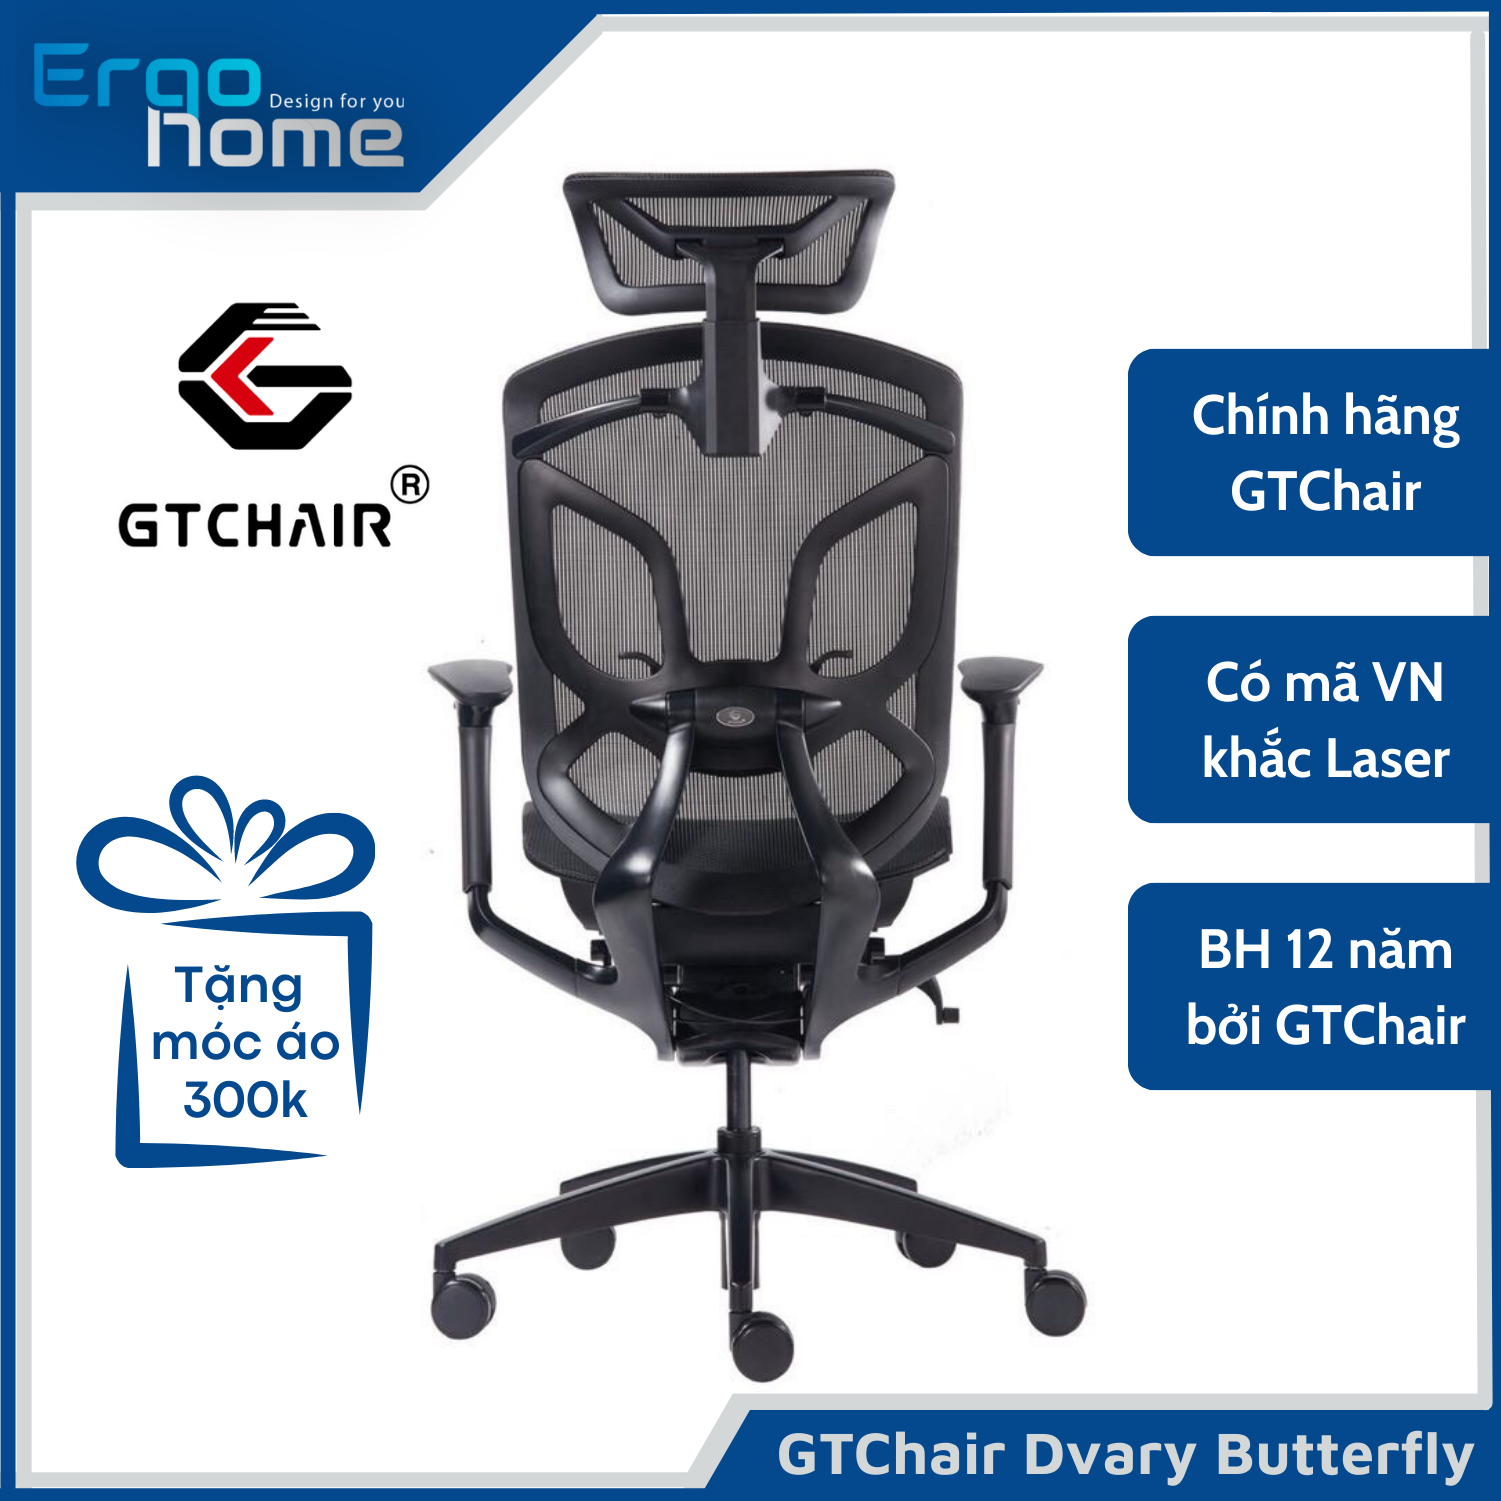 Ghế làm việc Ergonomic GTchair Dvary Butterfly siêu êm ái thiết kế chuẩn Công Thái Học, bảo vệ tốt cột sống, ngả sâu đến 160 độ tựa đầu 3D điều chỉnh ở tay ghế siêu tiện lợi - ERGOHOME